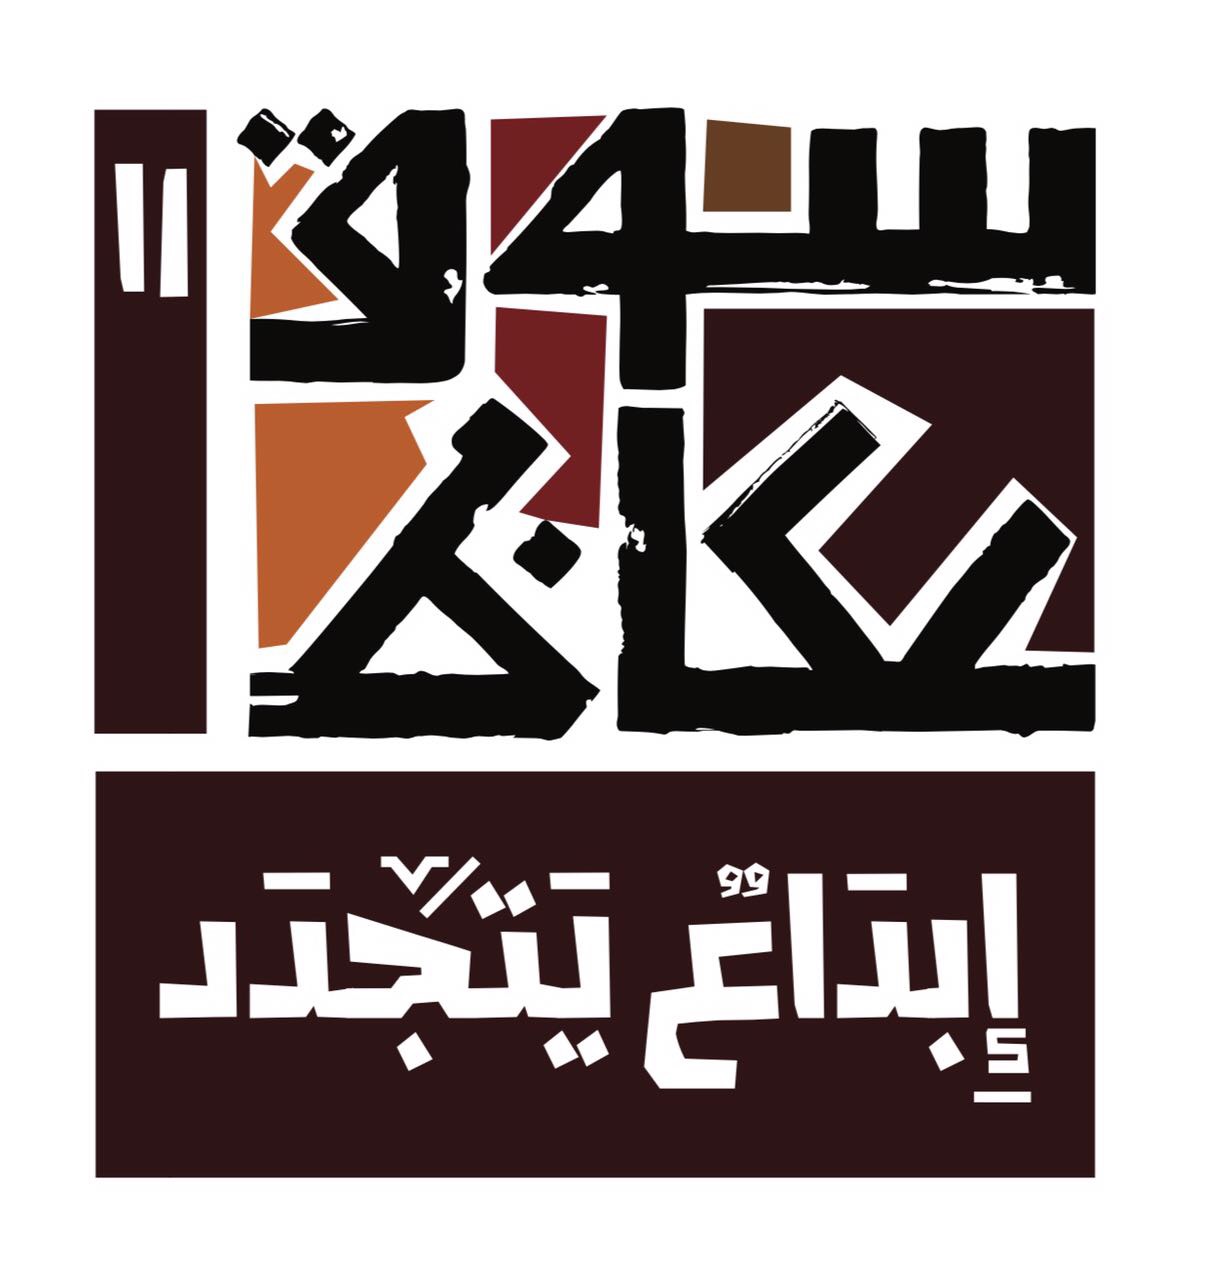 اللجنه الثقافية لسوق عكاظ تعتمد فتح باب المشاركة لجميع ألوان الفنون الشعبية السعودية